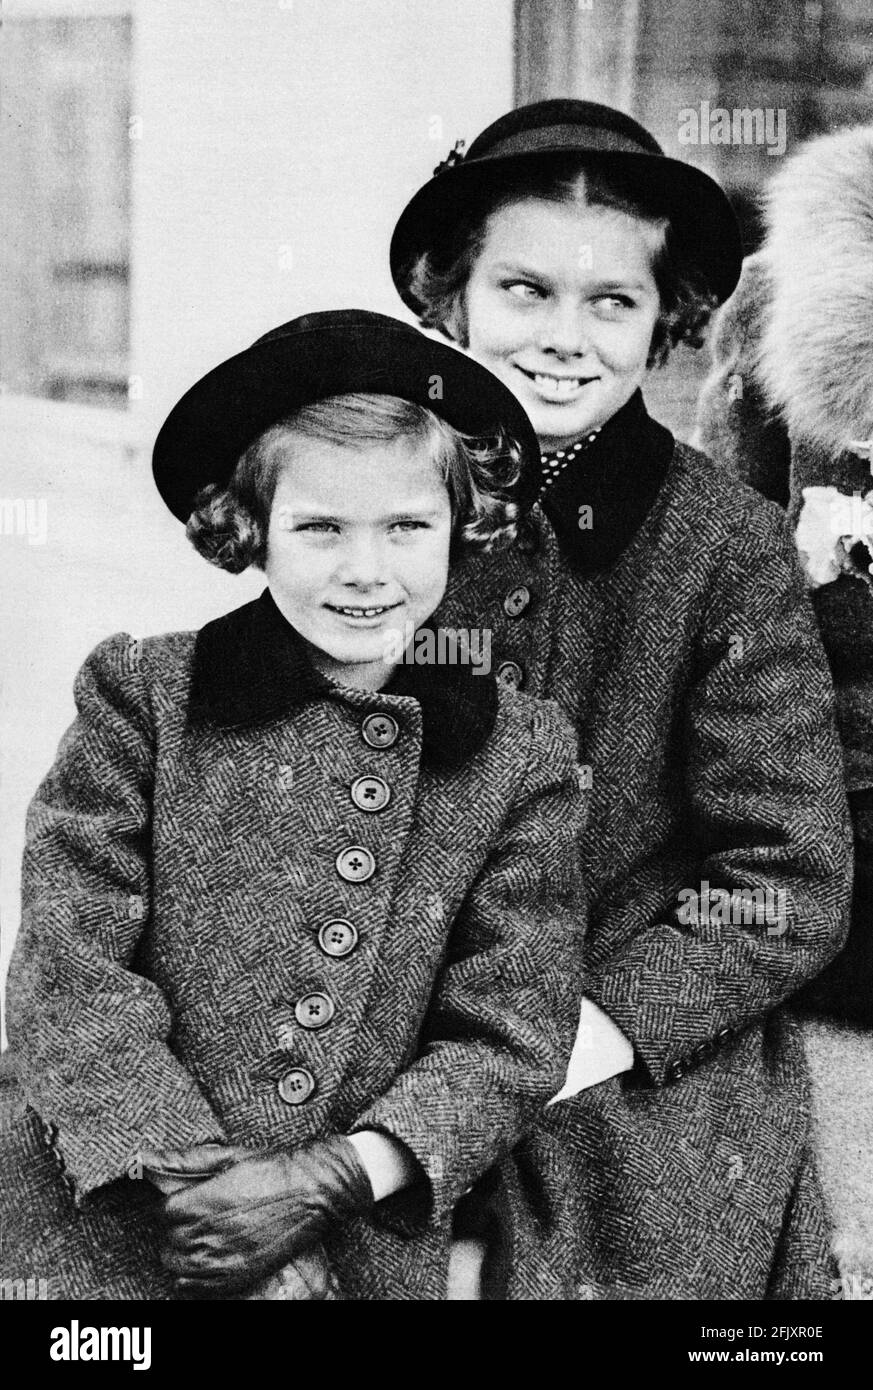 1936 , USA : die zukünftige Schauspielerin und Prinzessin GNADE KELLY von Monaco ( 1928 - 1982 ) als ein kleines Kind von 8 Jahren mit ihrer Schwester PEGGY , 10 Jahre - ATTRICE - PRINCIPESSA - Lächeln - sorriso - Baby - personalità celebrità attori da Bambini bambino giovani giovane piccolo piccoli - Bambina - Persönlichkeit Persönlichkeiten Schauspielerin Schauspieler Prominente, als kleiner Junge jung war ---- Archivio GBB Stockfoto